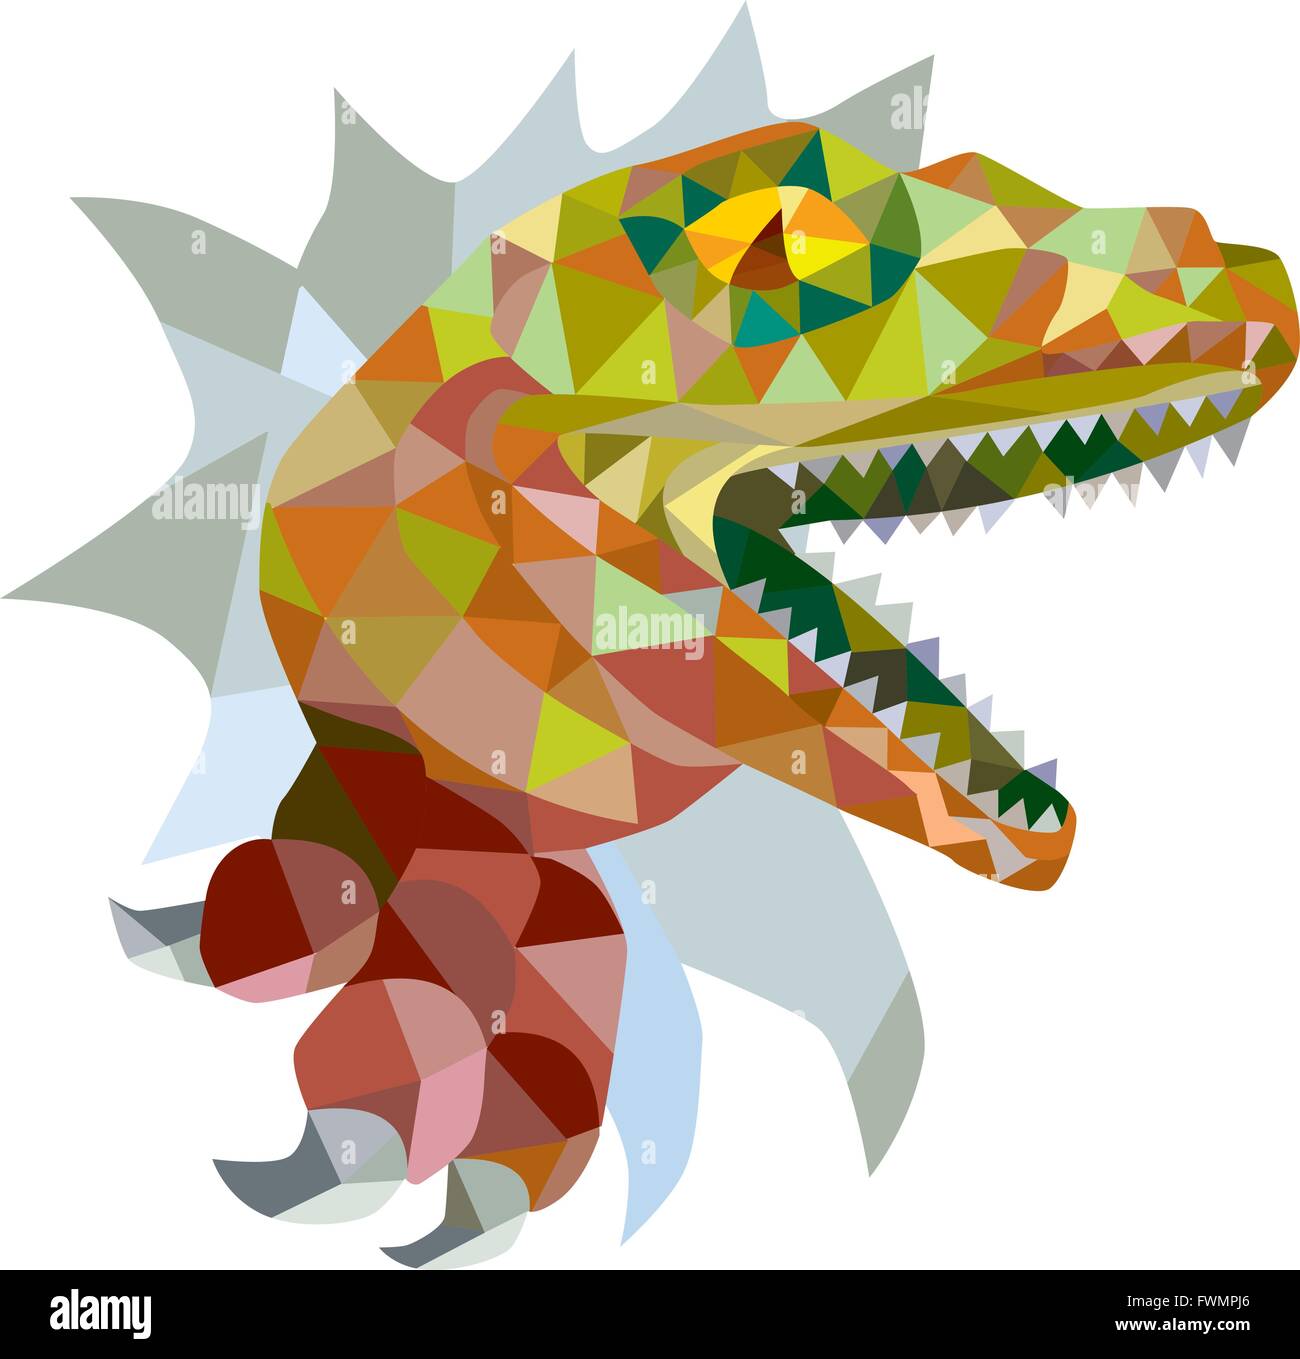 Niedrige Polygon Stil Illustration ein Raptor t-Rex Dinosaurier Echse Reptil Wand auf isolierte Hintergrund ausbrechen. Stock Vektor